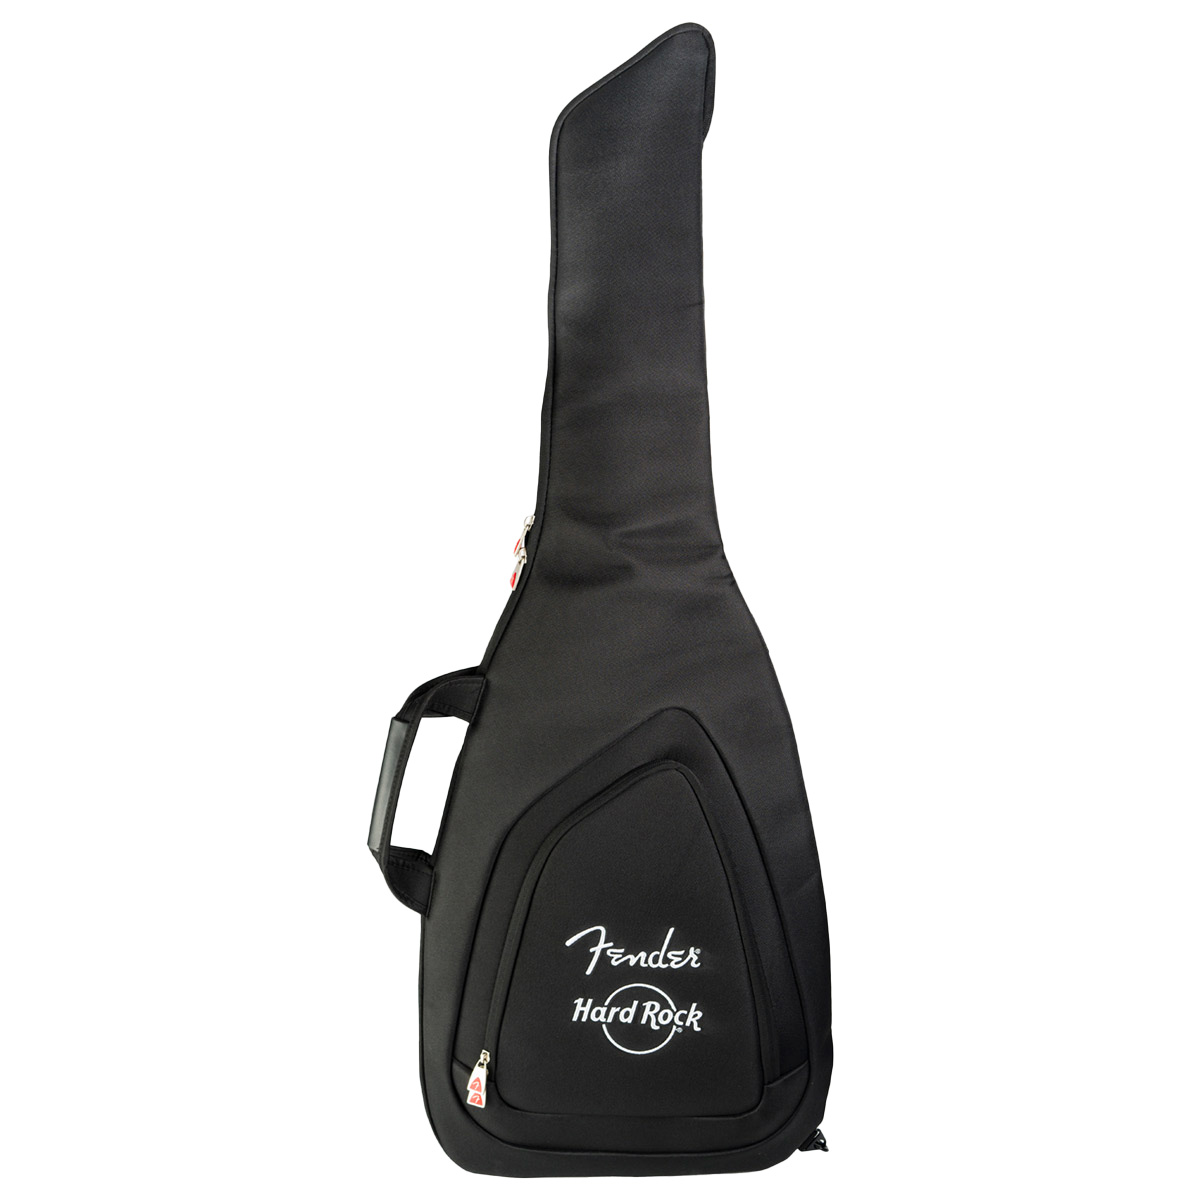 Fender x Hard Rock Electric Guitar Gig Bag in Black image number 7